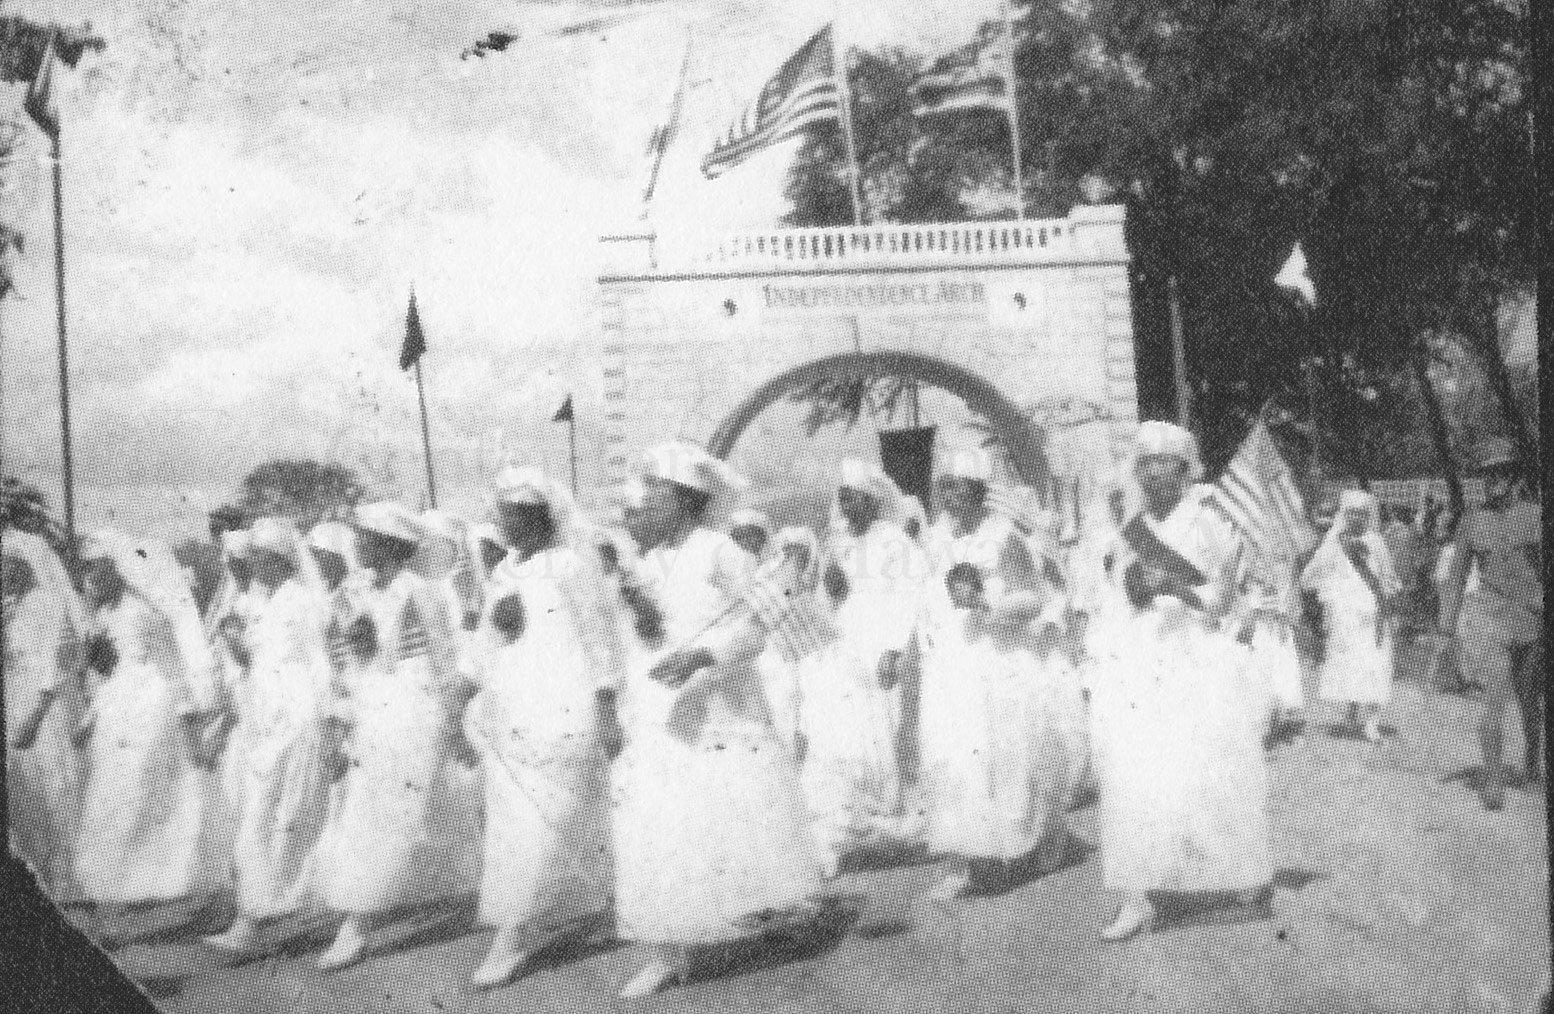 KWRS Ladies in parade at Kapiolani Park, Nov 11, 1921